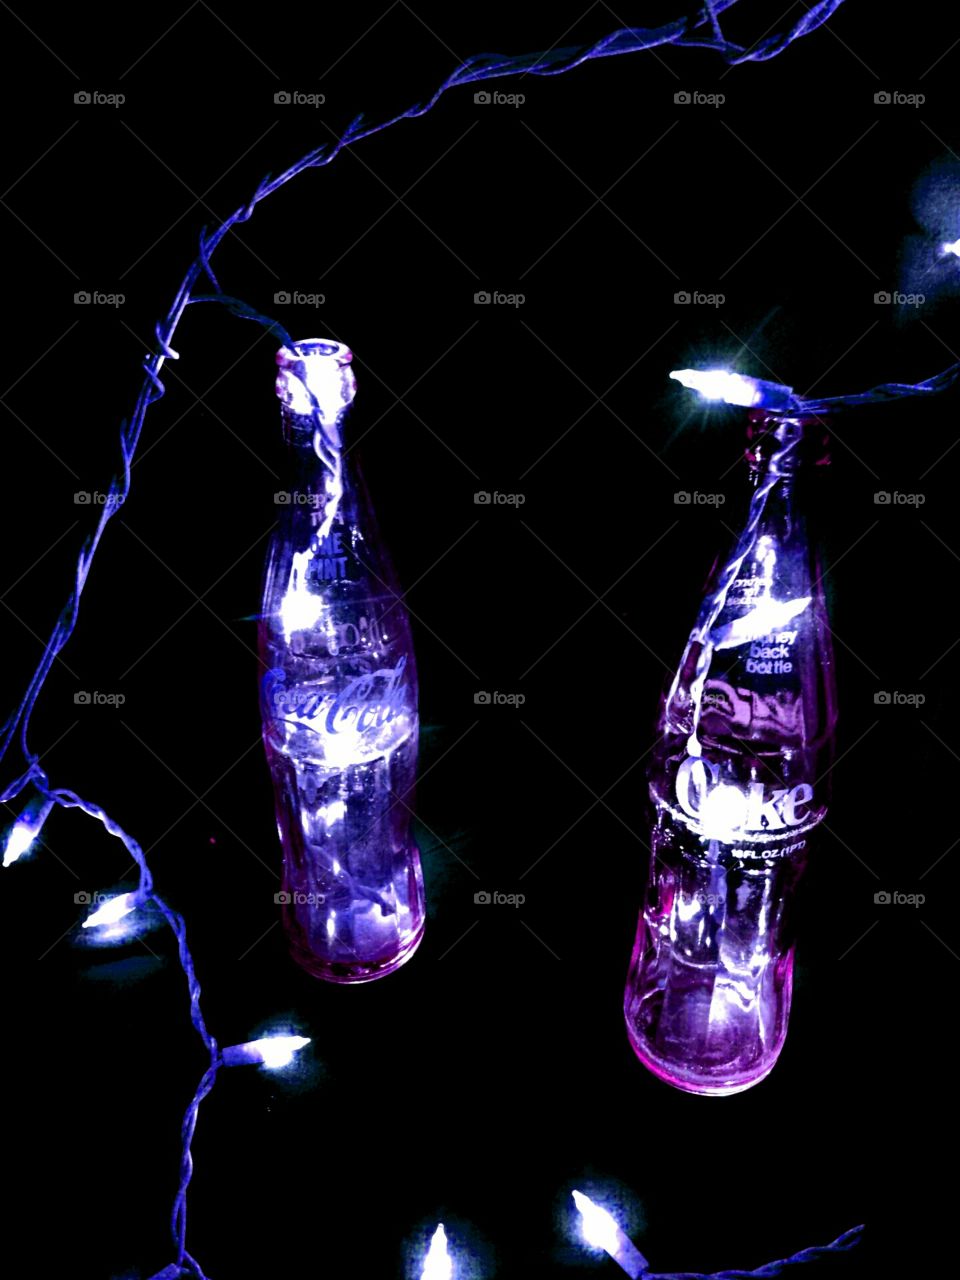 Electric purple coke a cola